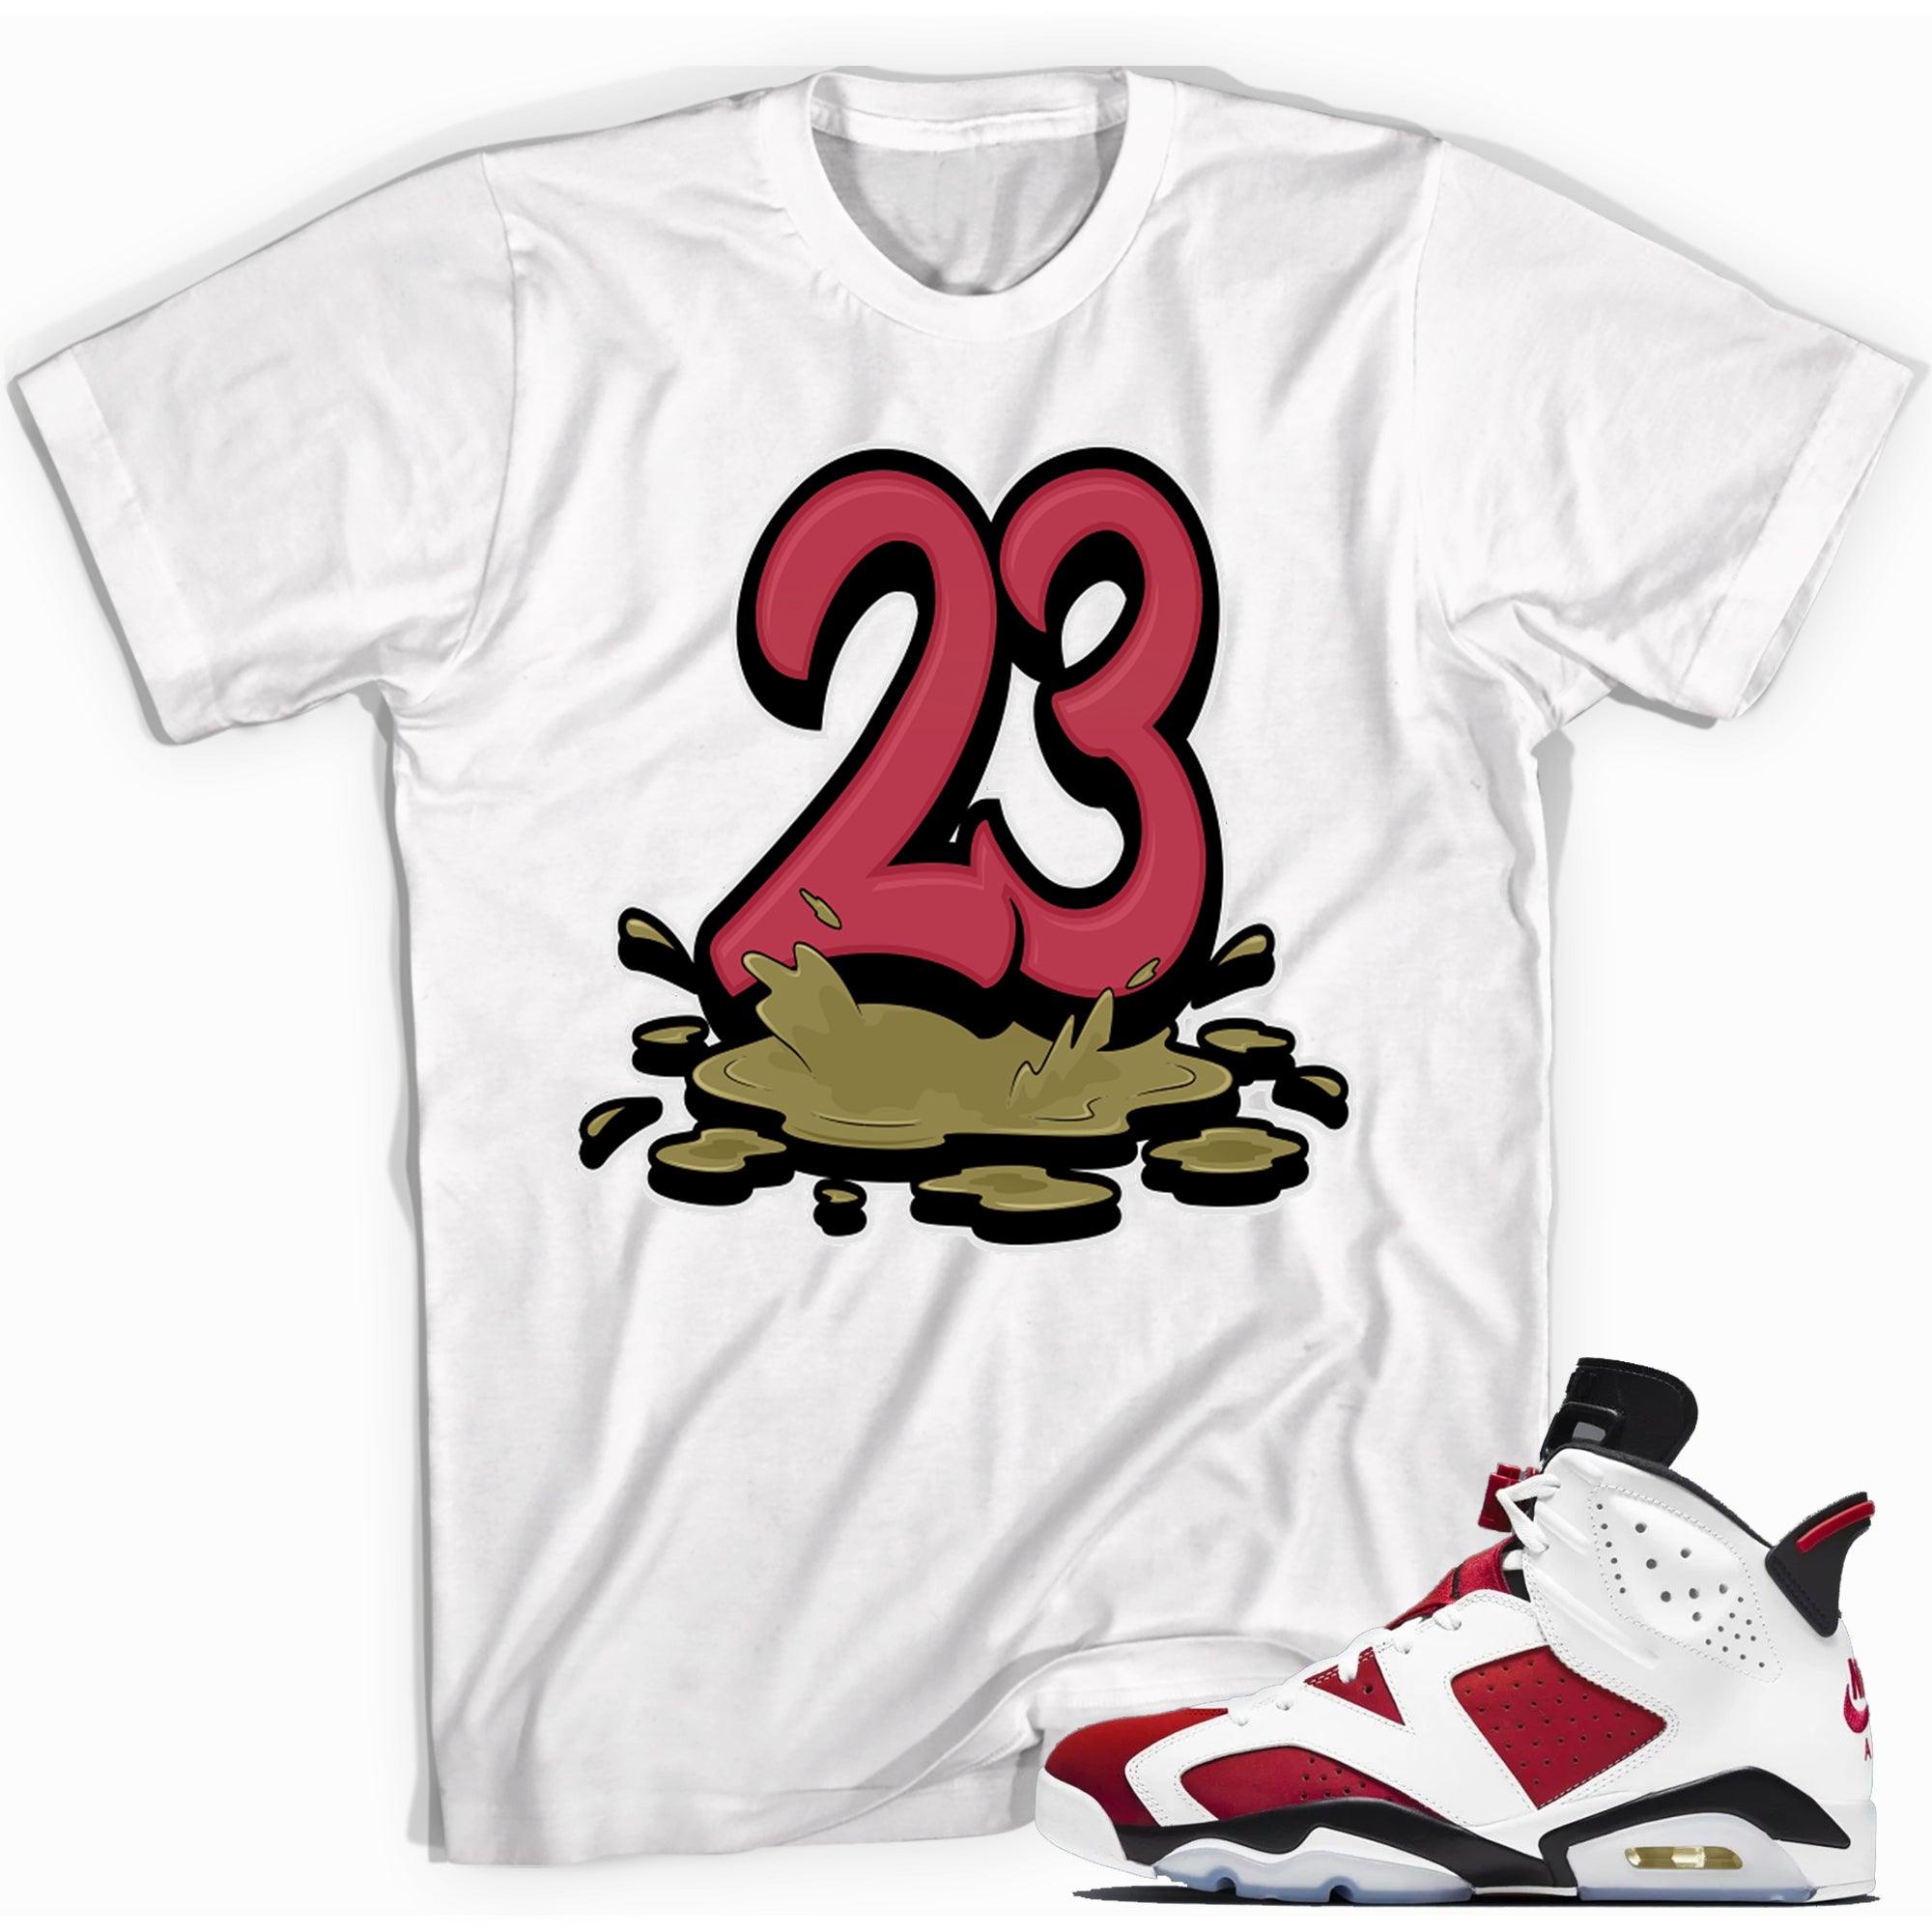 Number 23 Melting Shirt Air Jordan 6 Carmine photo